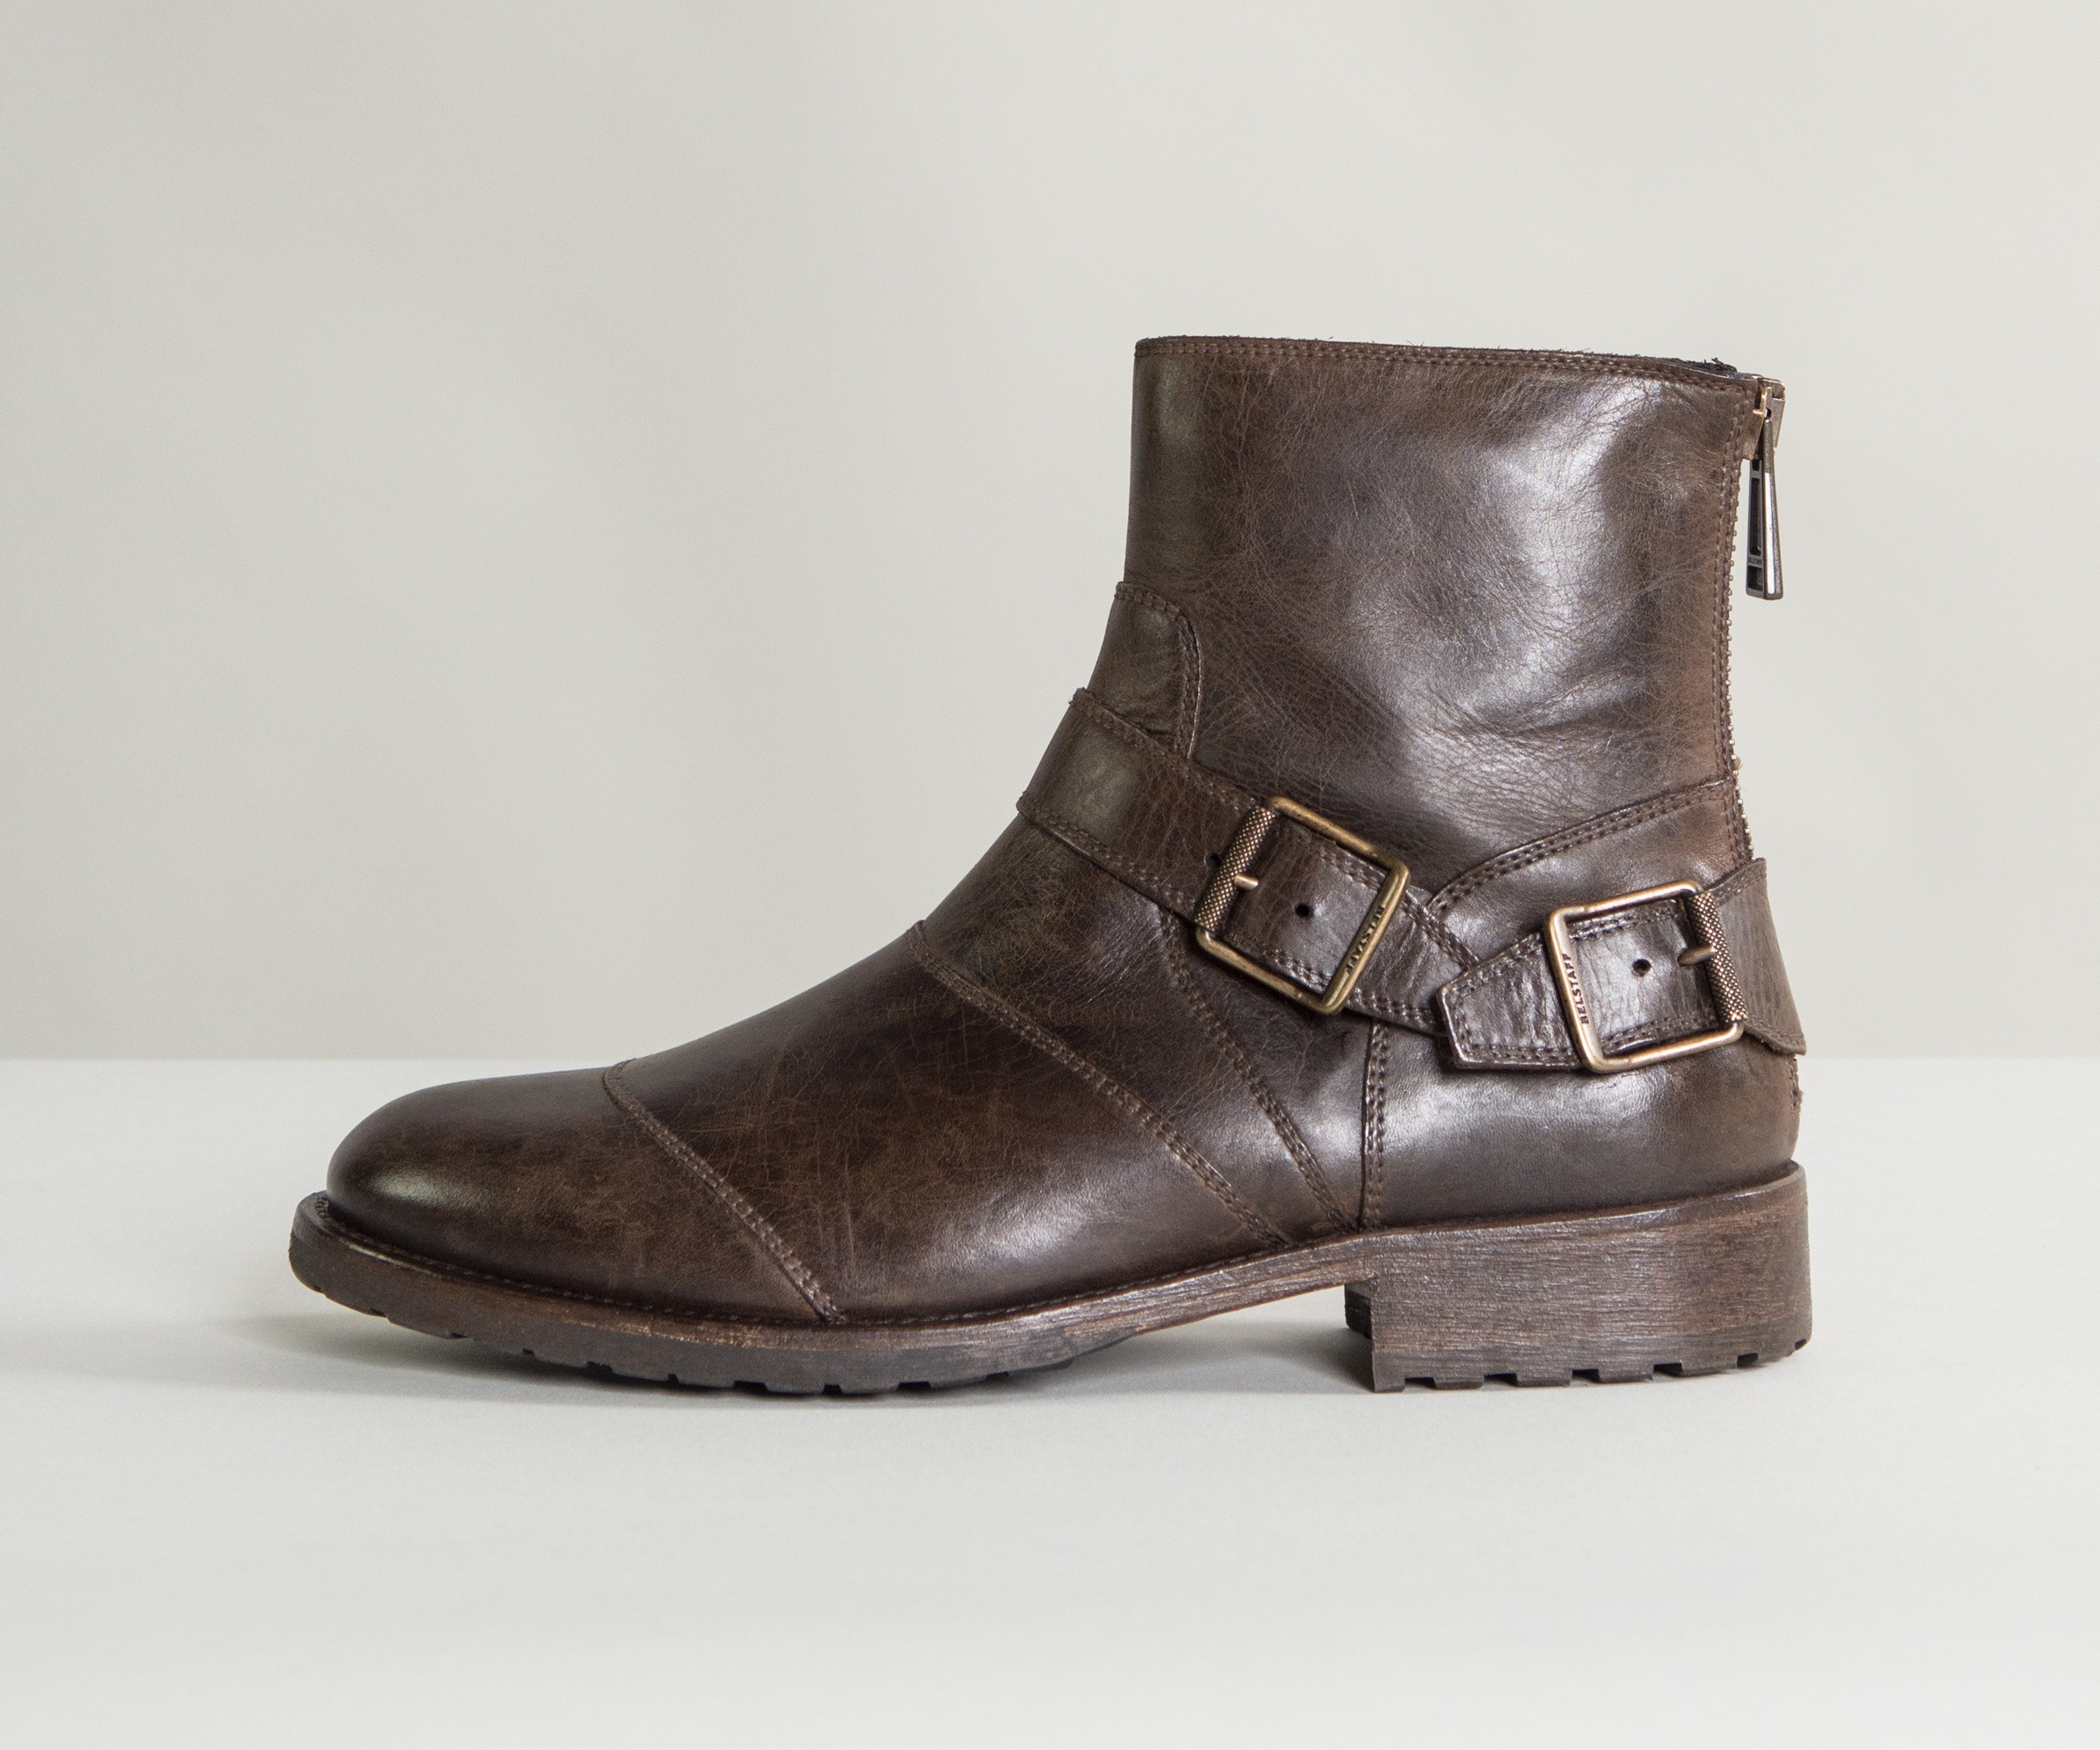 Belstaff boots sale